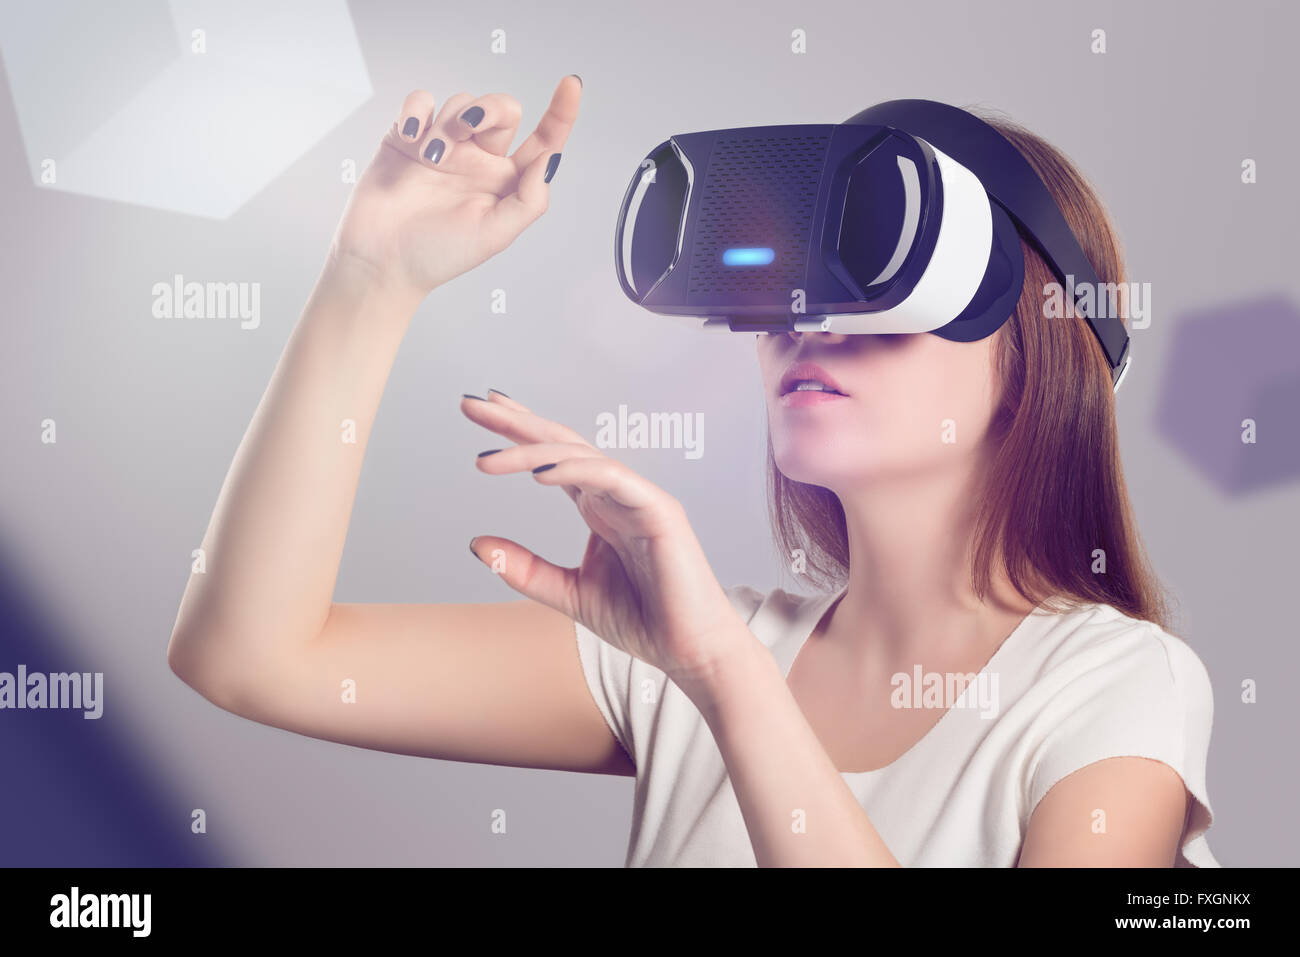 Frau in VR Kopfhörer nachschlagen und versuchen, Objekte in der virtuellen Realität zu berühren. VR ist eine Computertechnologie. Stockfoto